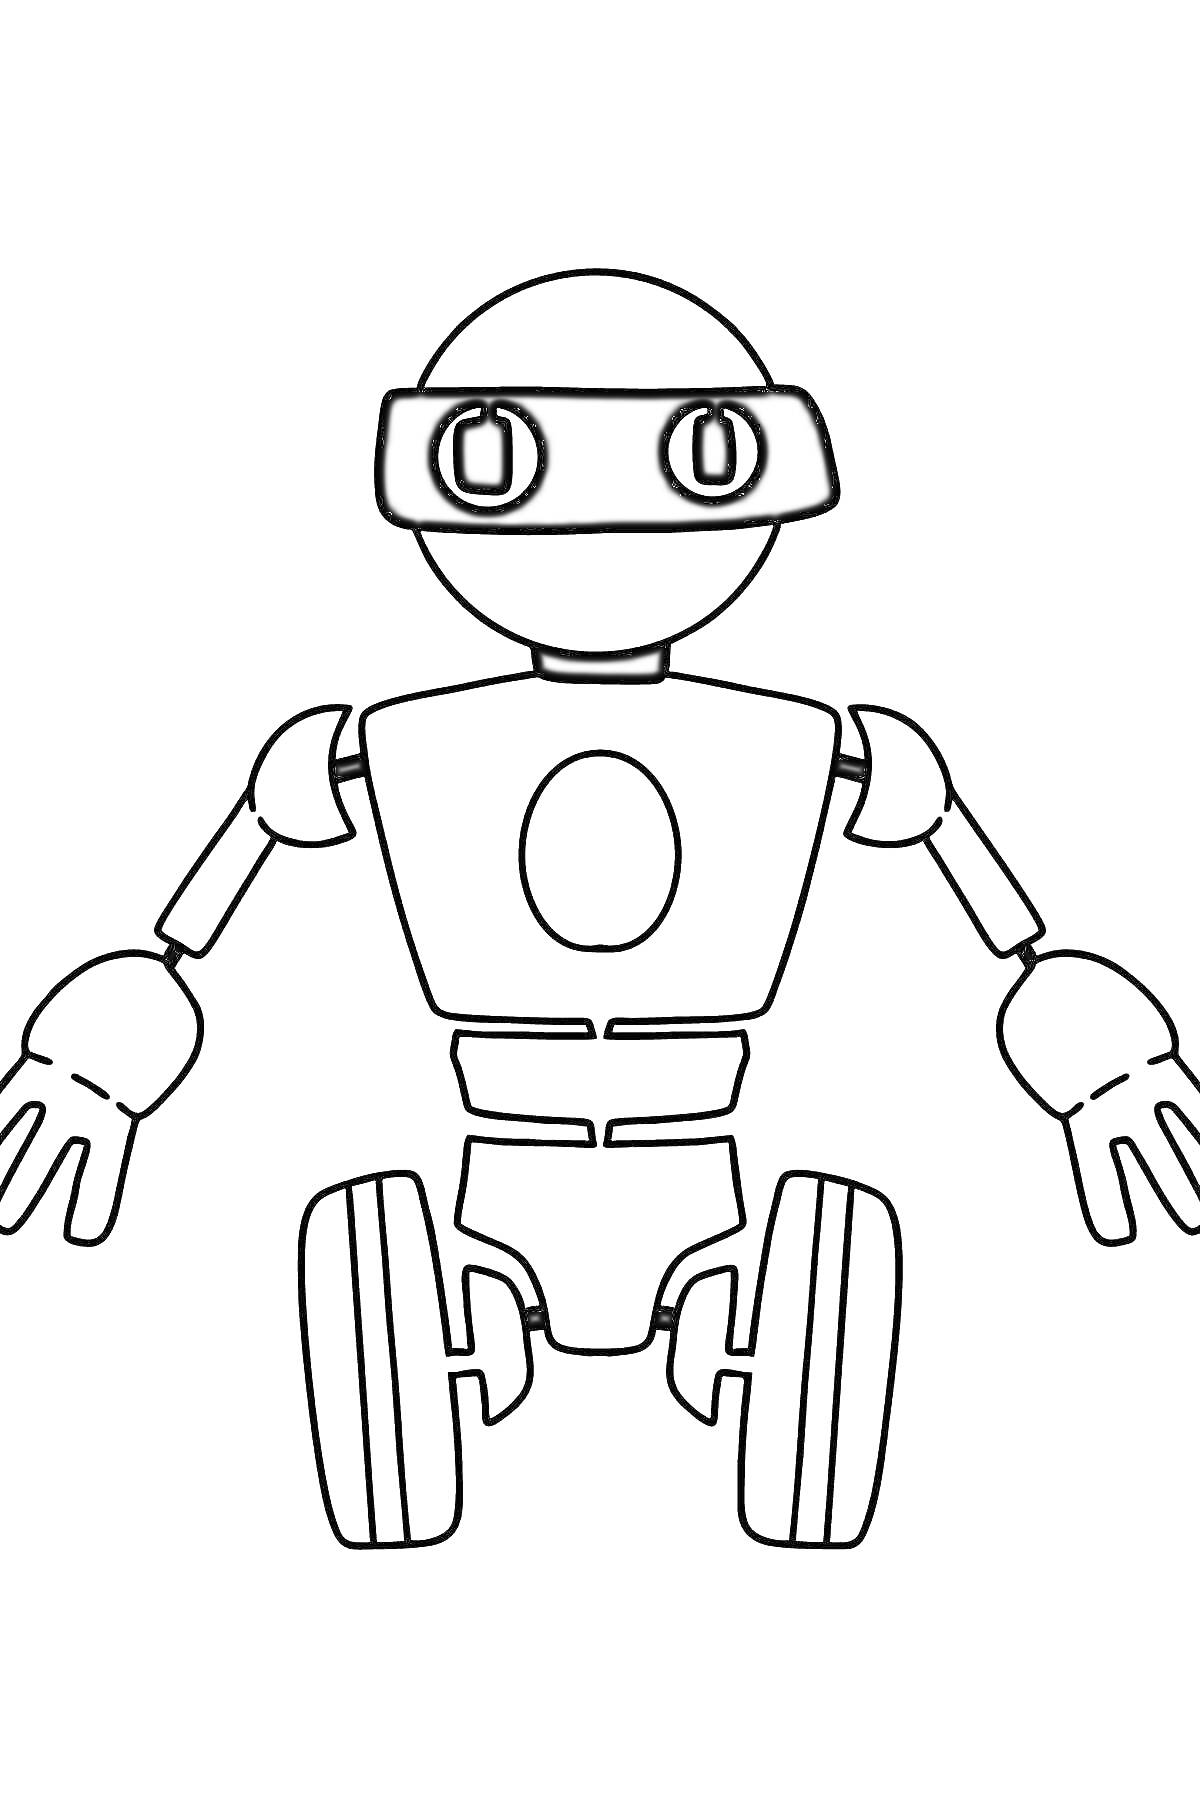 Раскраска Робот с круглыми глазами и колесами вместо ног